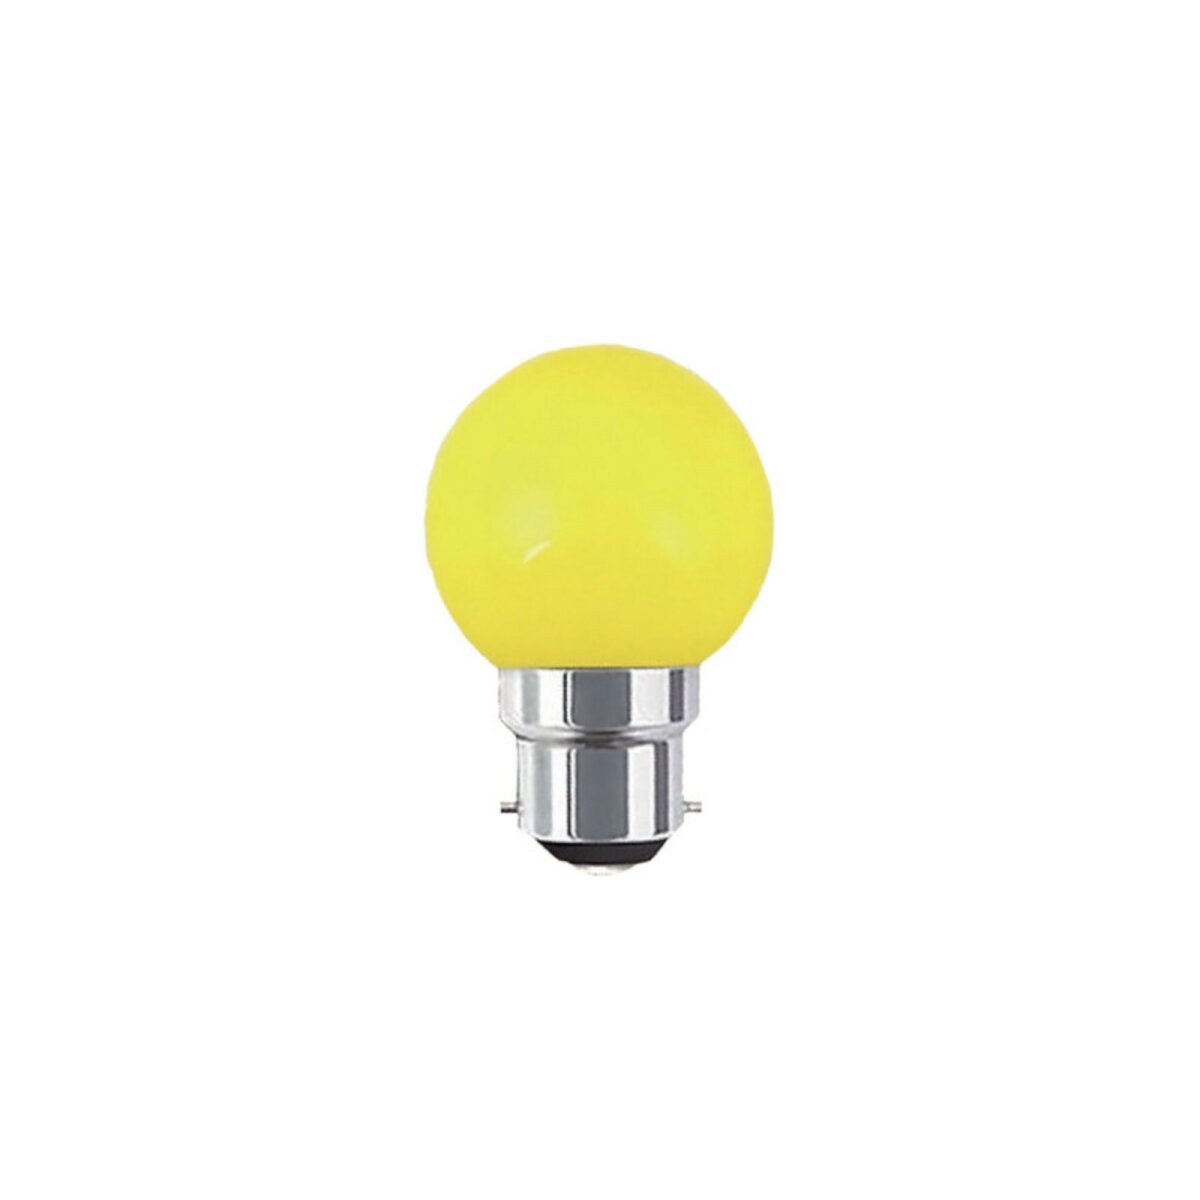  Ampoule LED guinguette jaune XXCELL - 1 W - B22